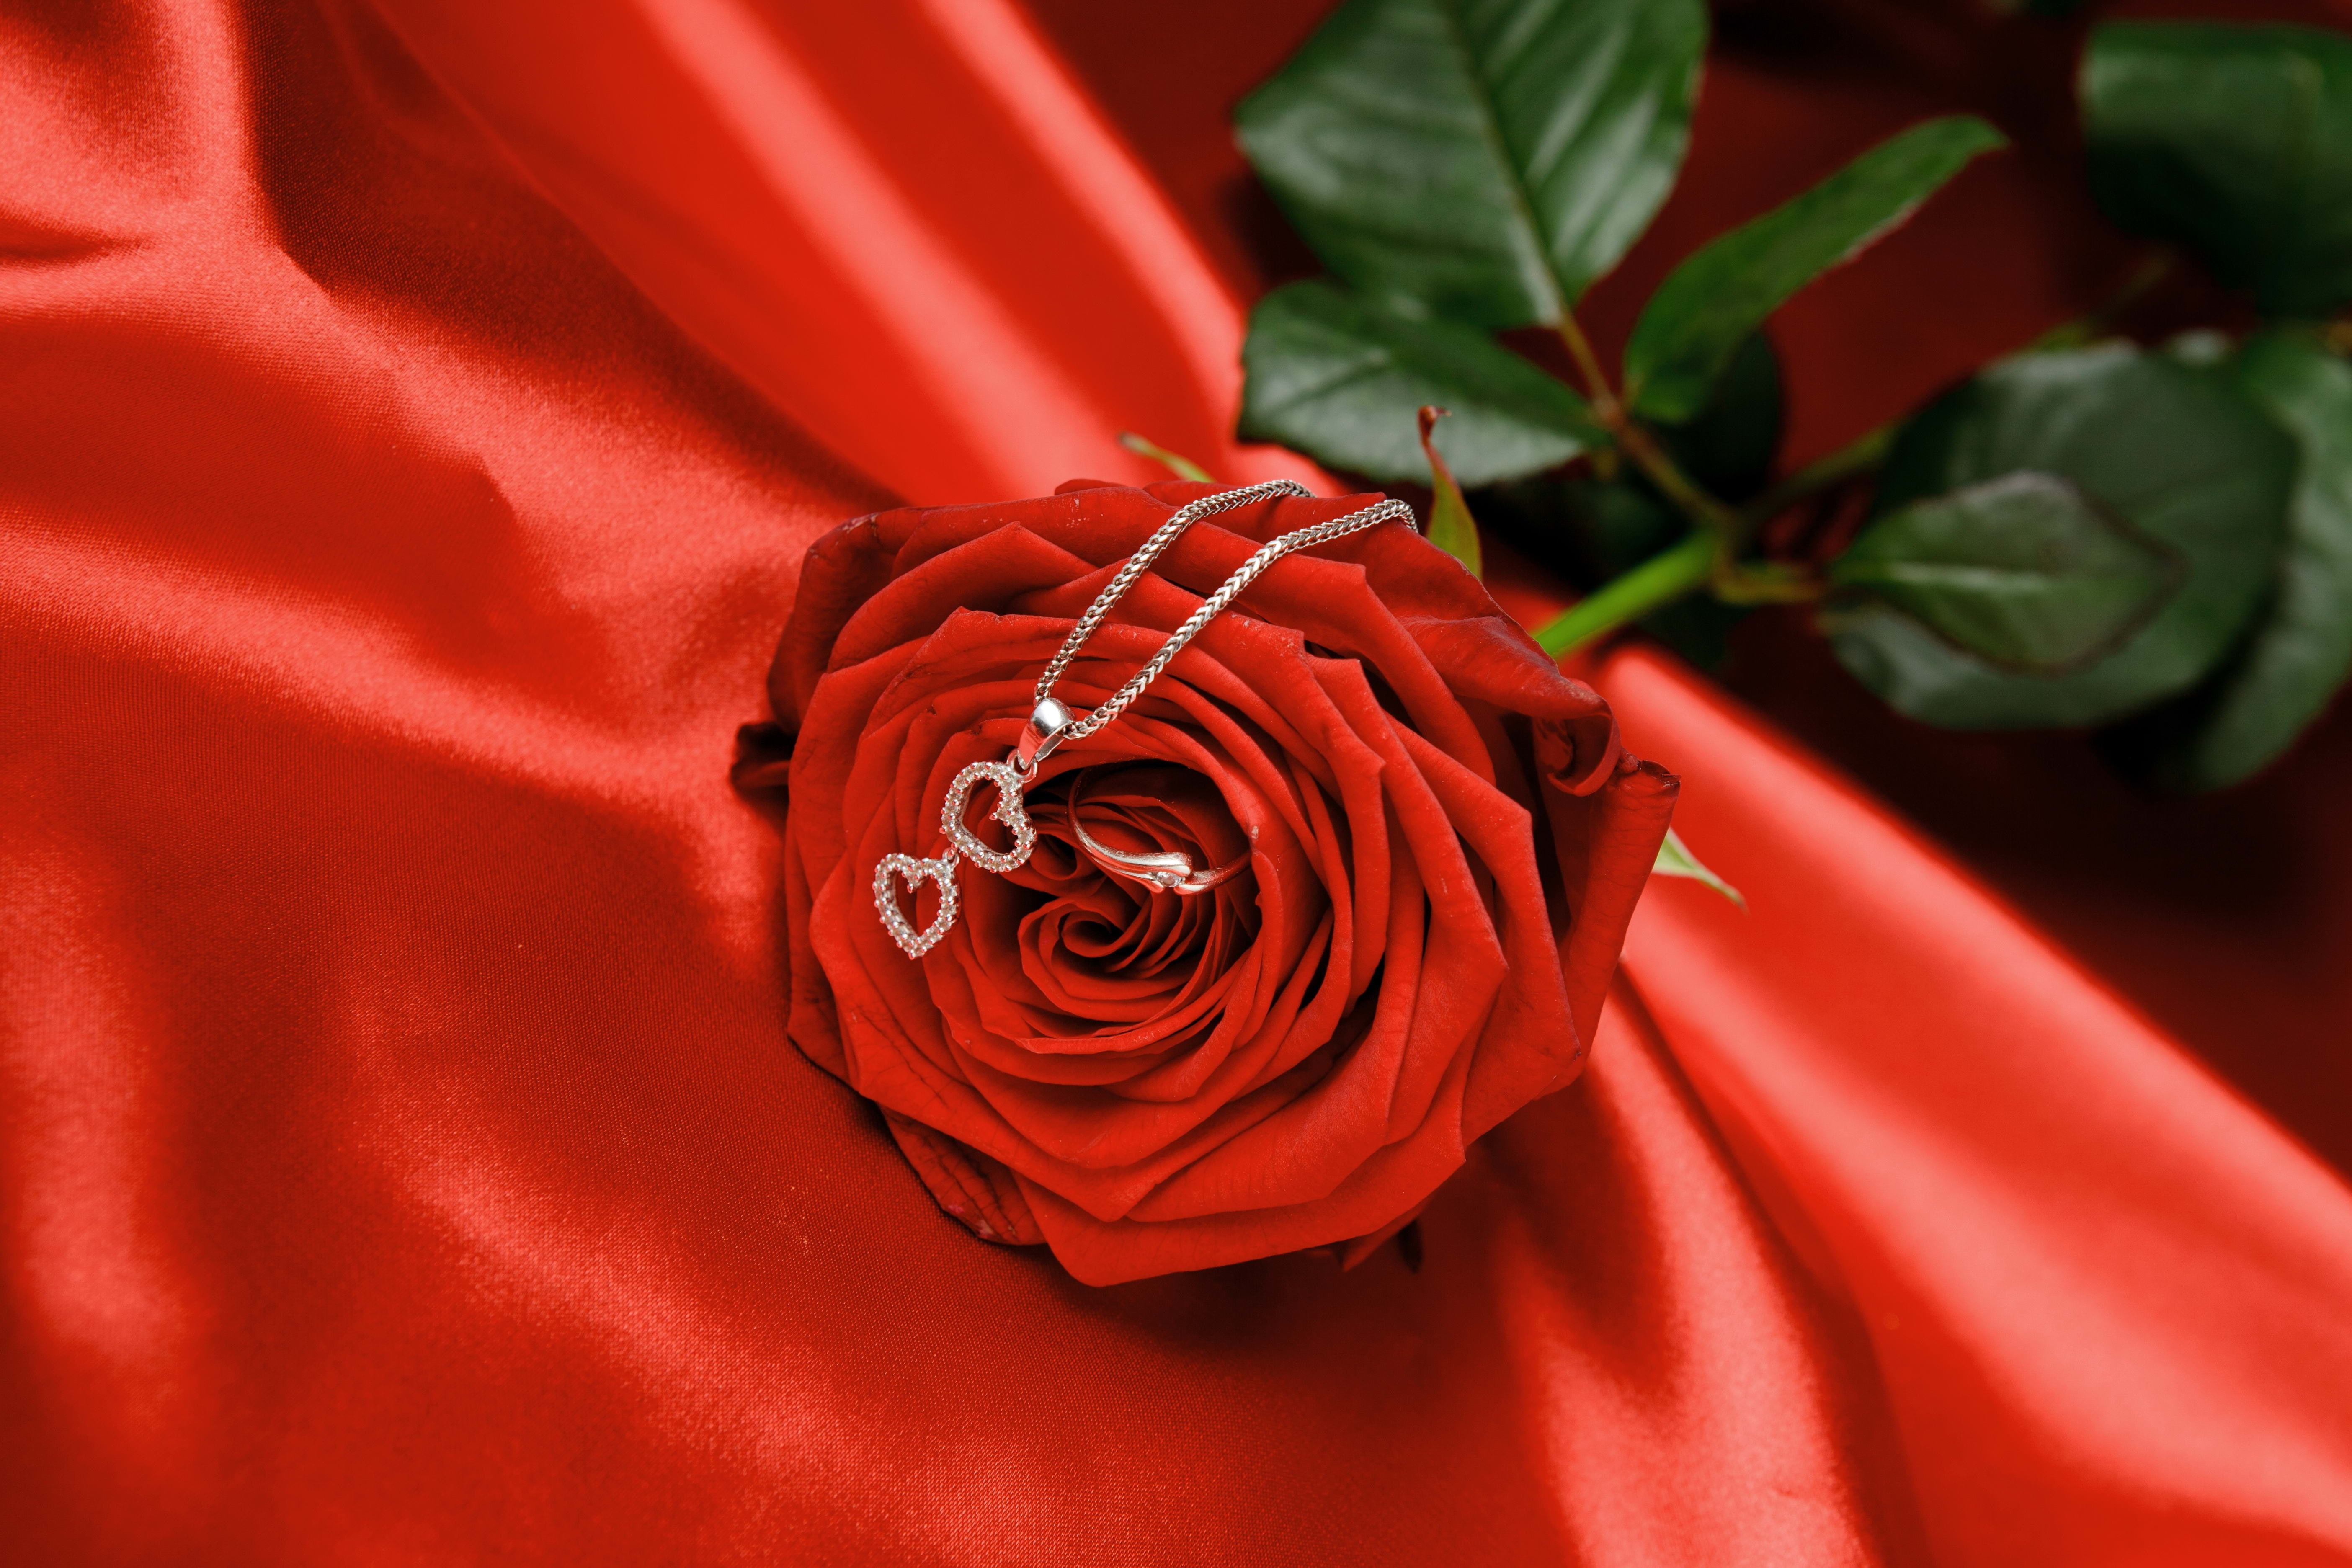 Rose, Chain, Heart, Flower, red, plant, rose - flower, celebration